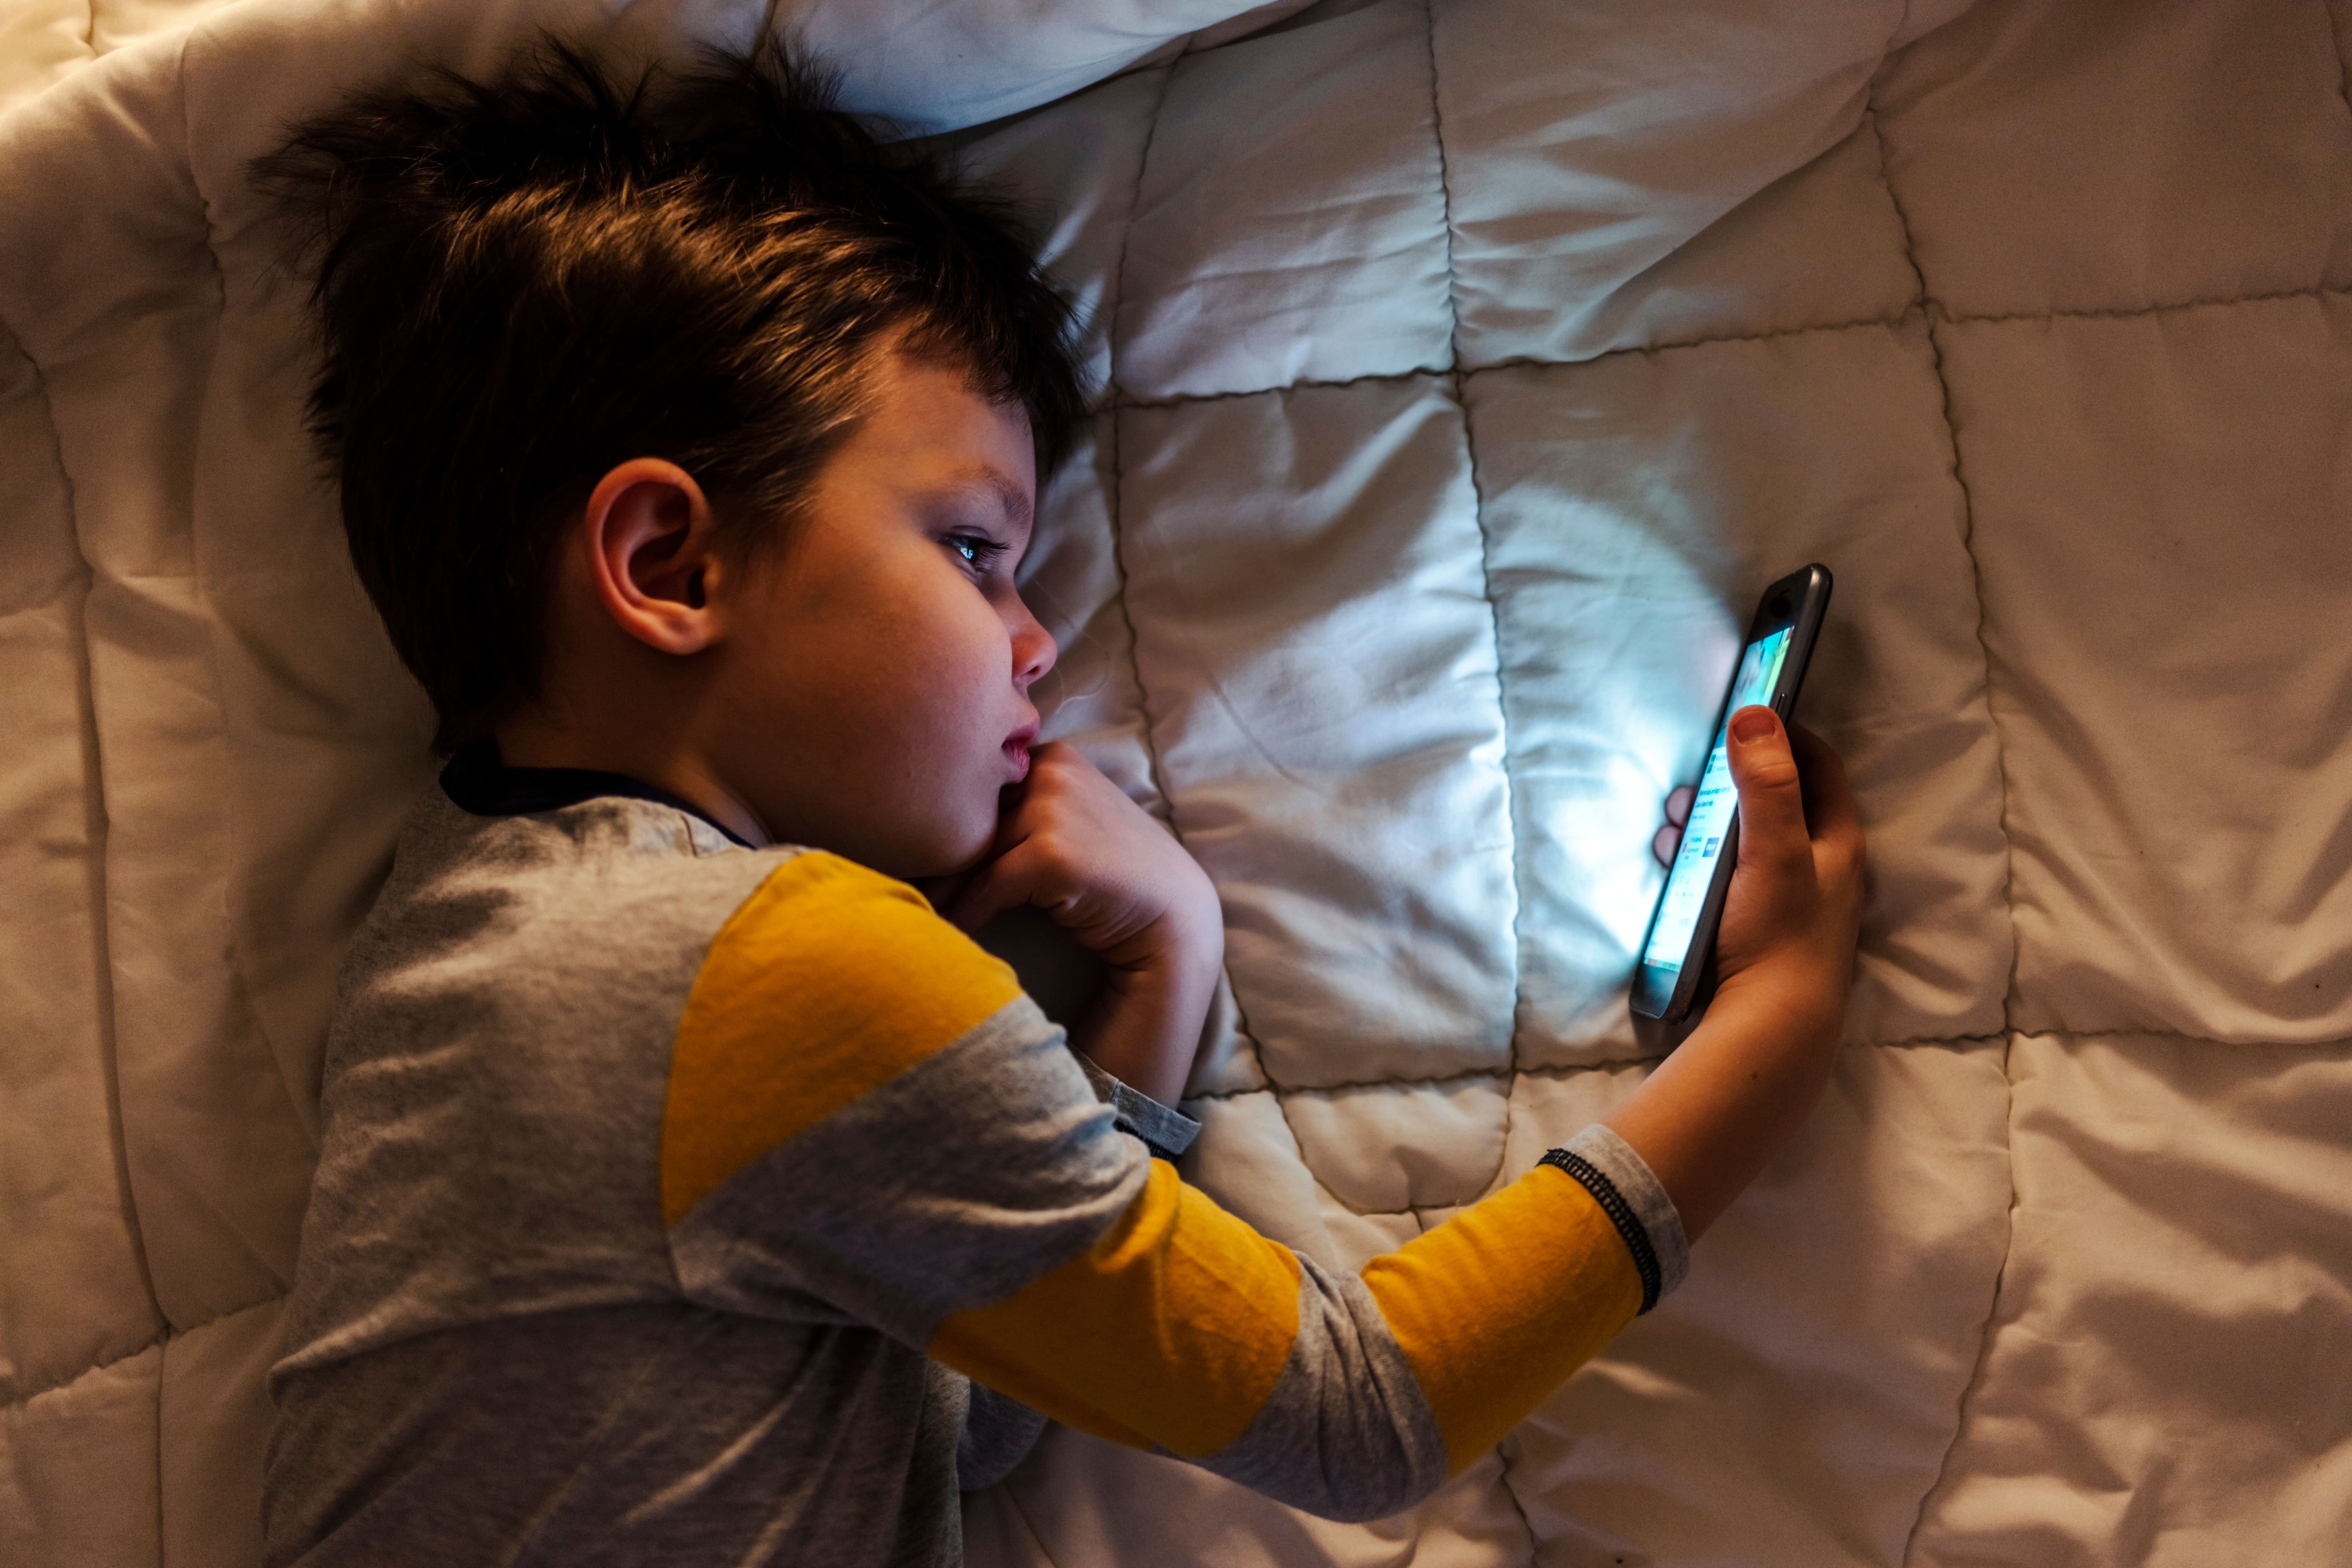 pantallas LED en niños puede causar enfermedades